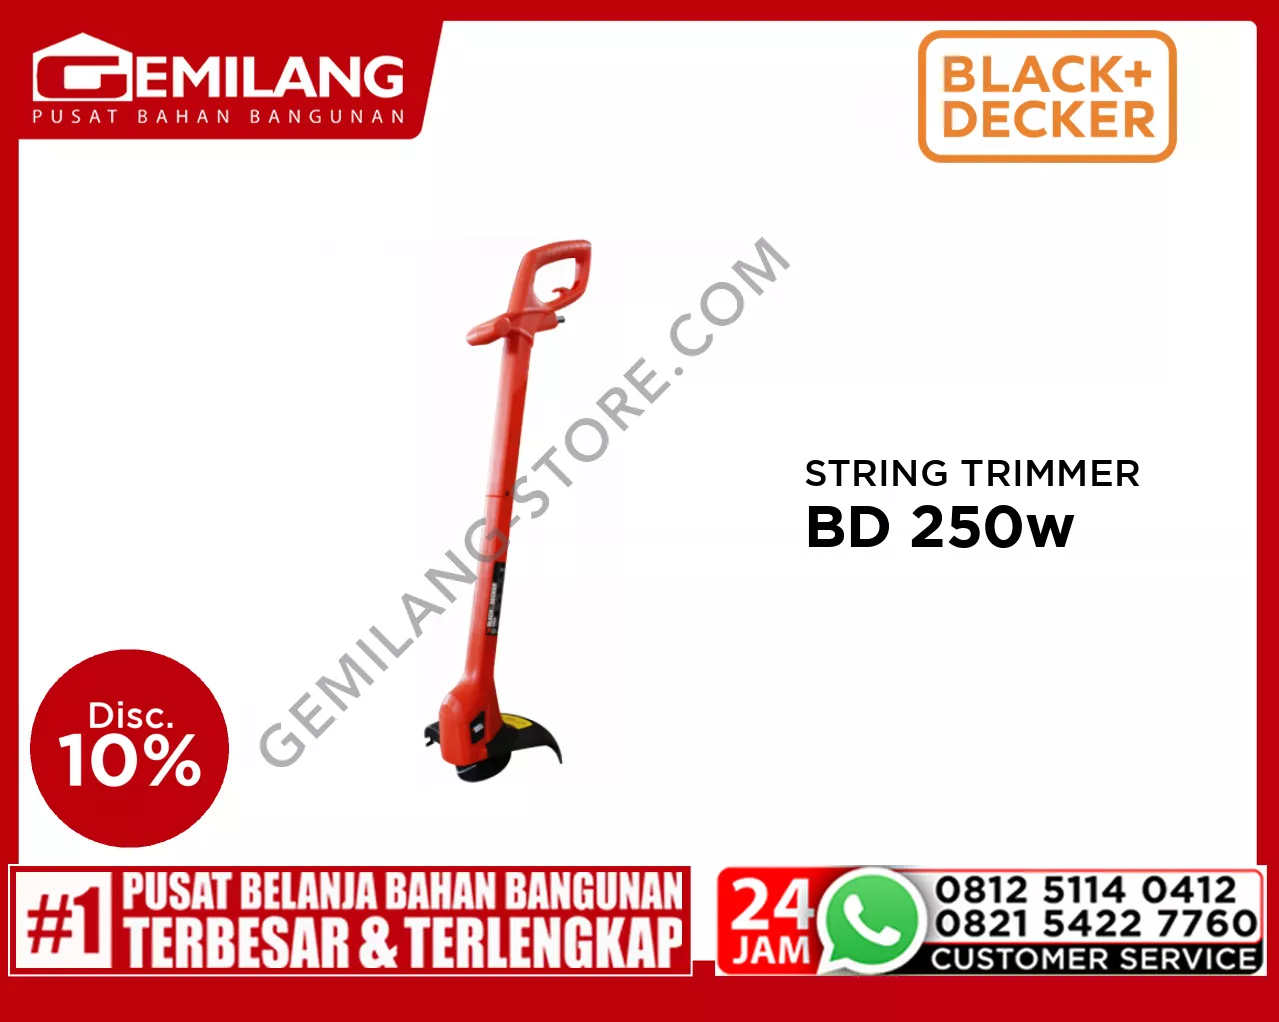 BLACK + DECKER STRING TRIMMER GL260-B1 BD 250w